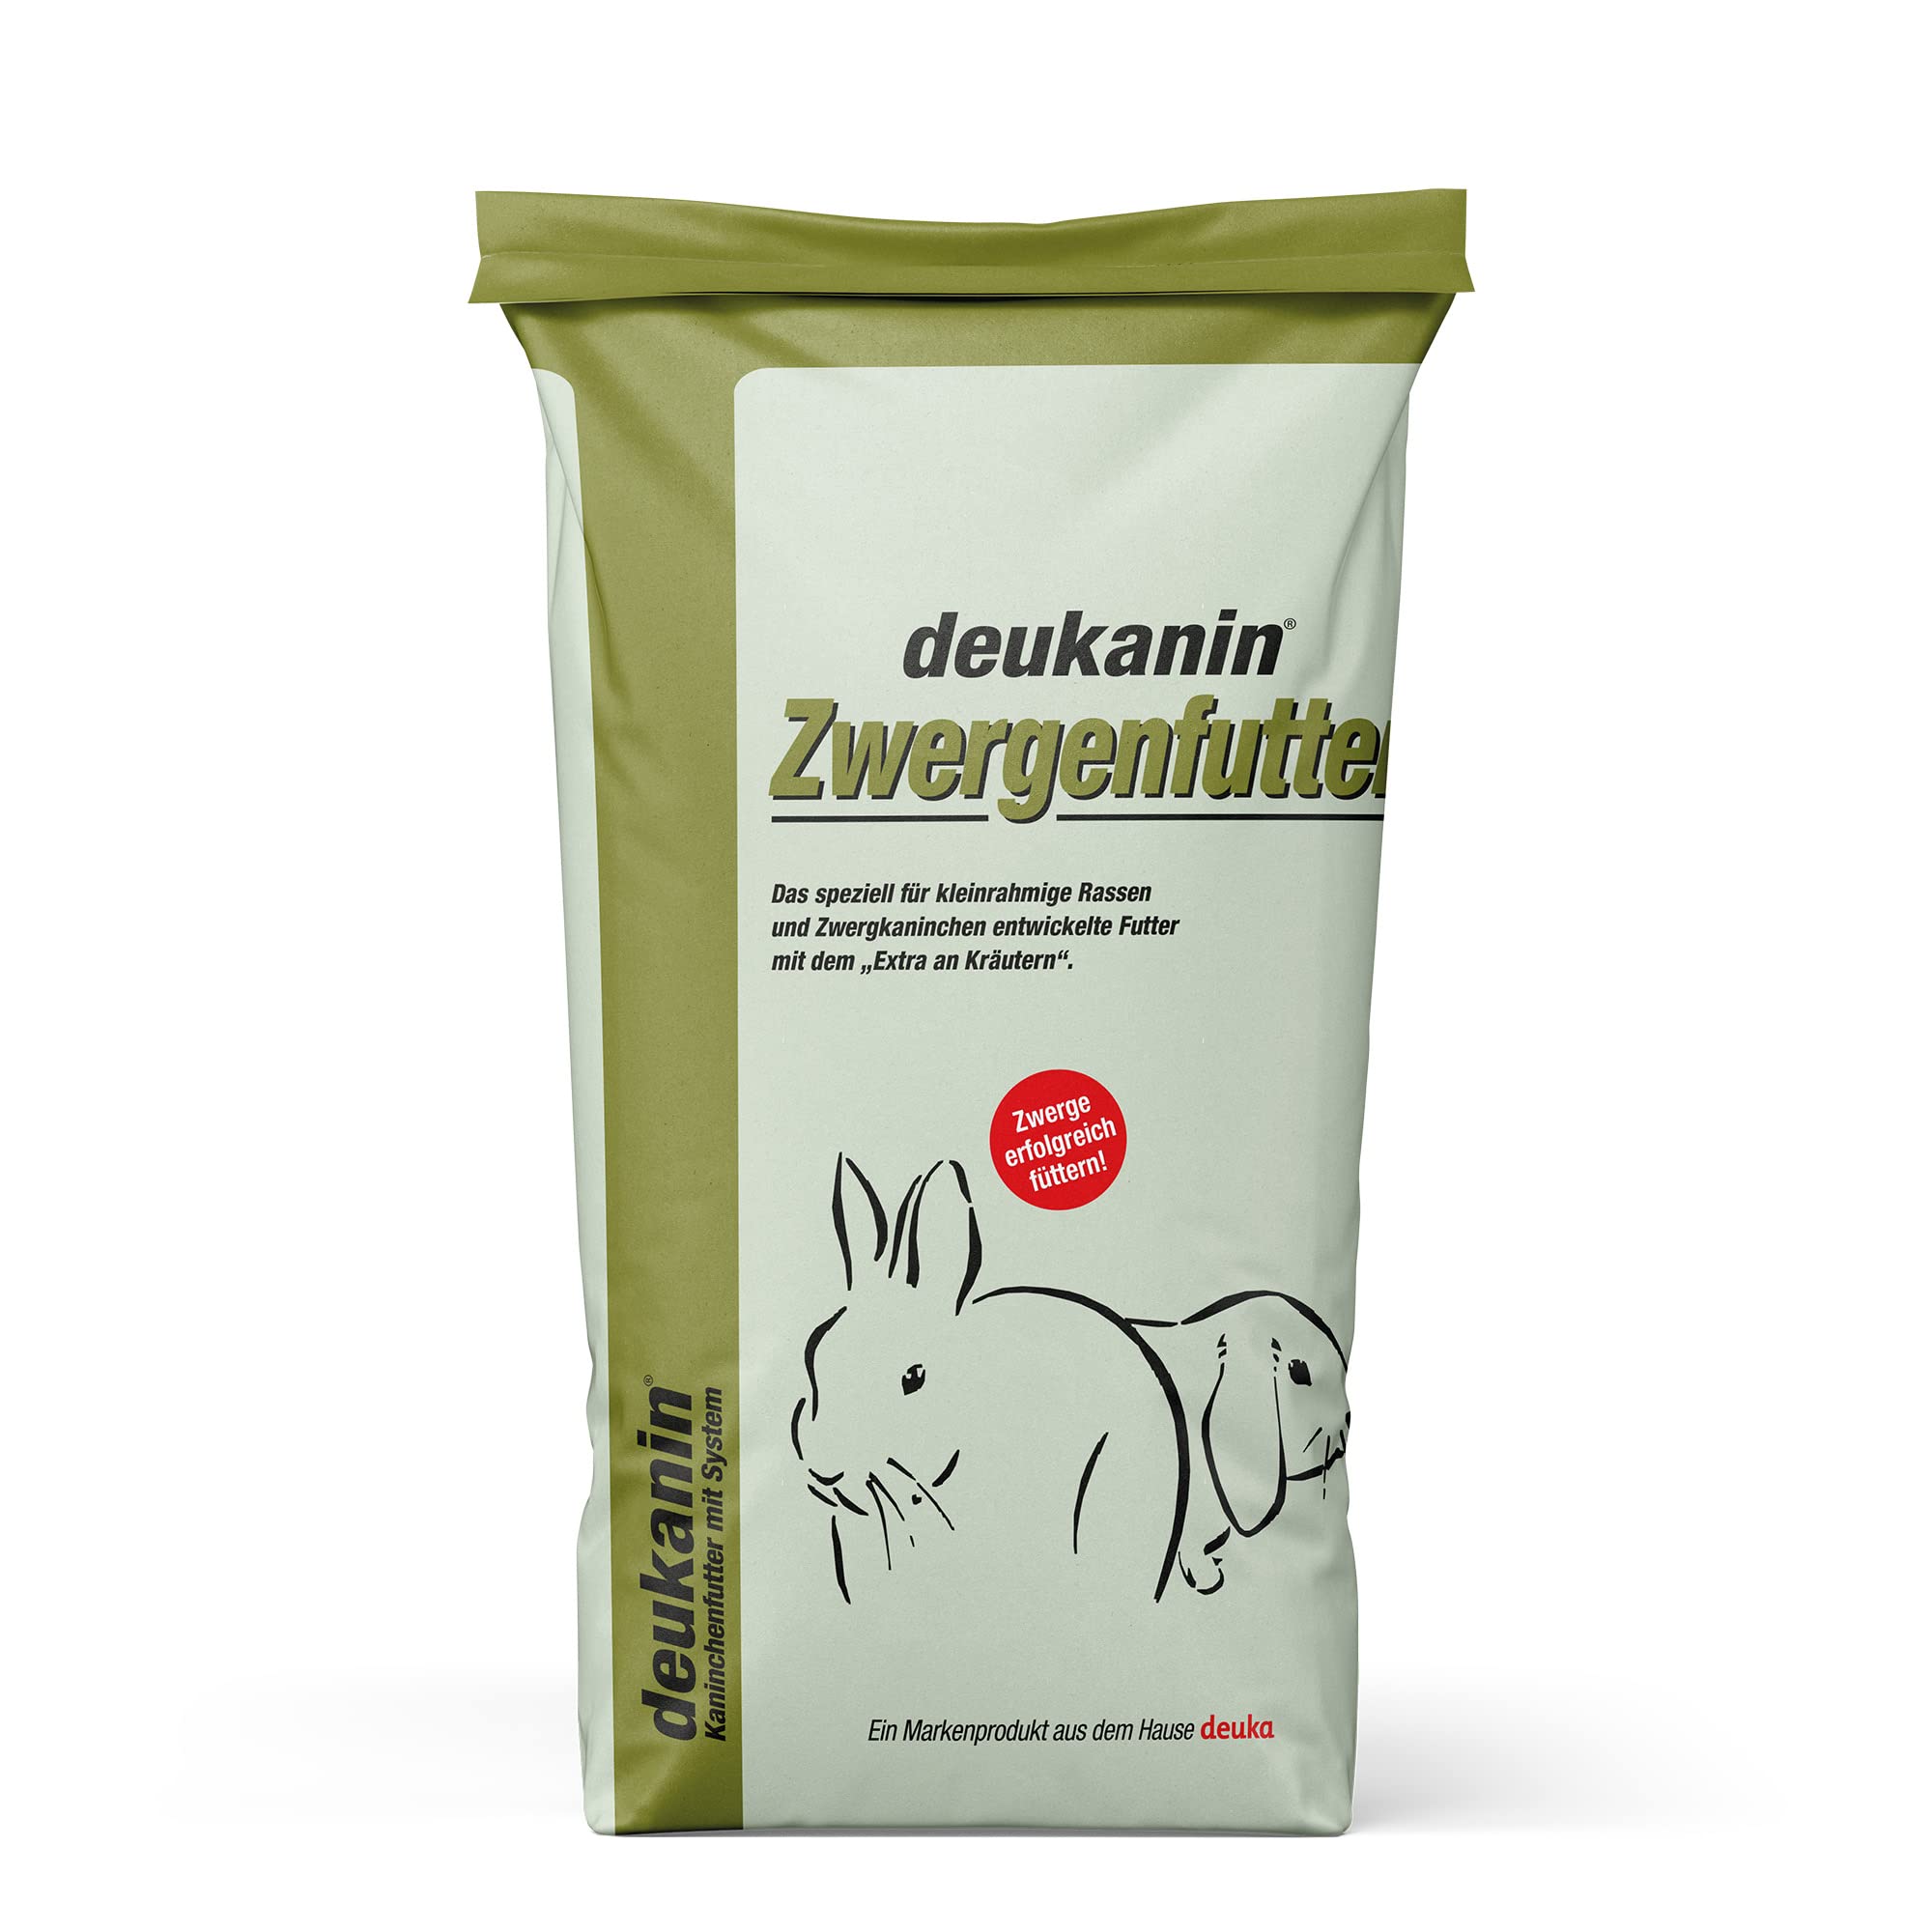 deukanin Zwergenfutter 25 kg | Kaninchenfutter | Spezialfutter für kleine Rassen und Zwergkaninchen | Alleinfuttermittel für Kaninchen